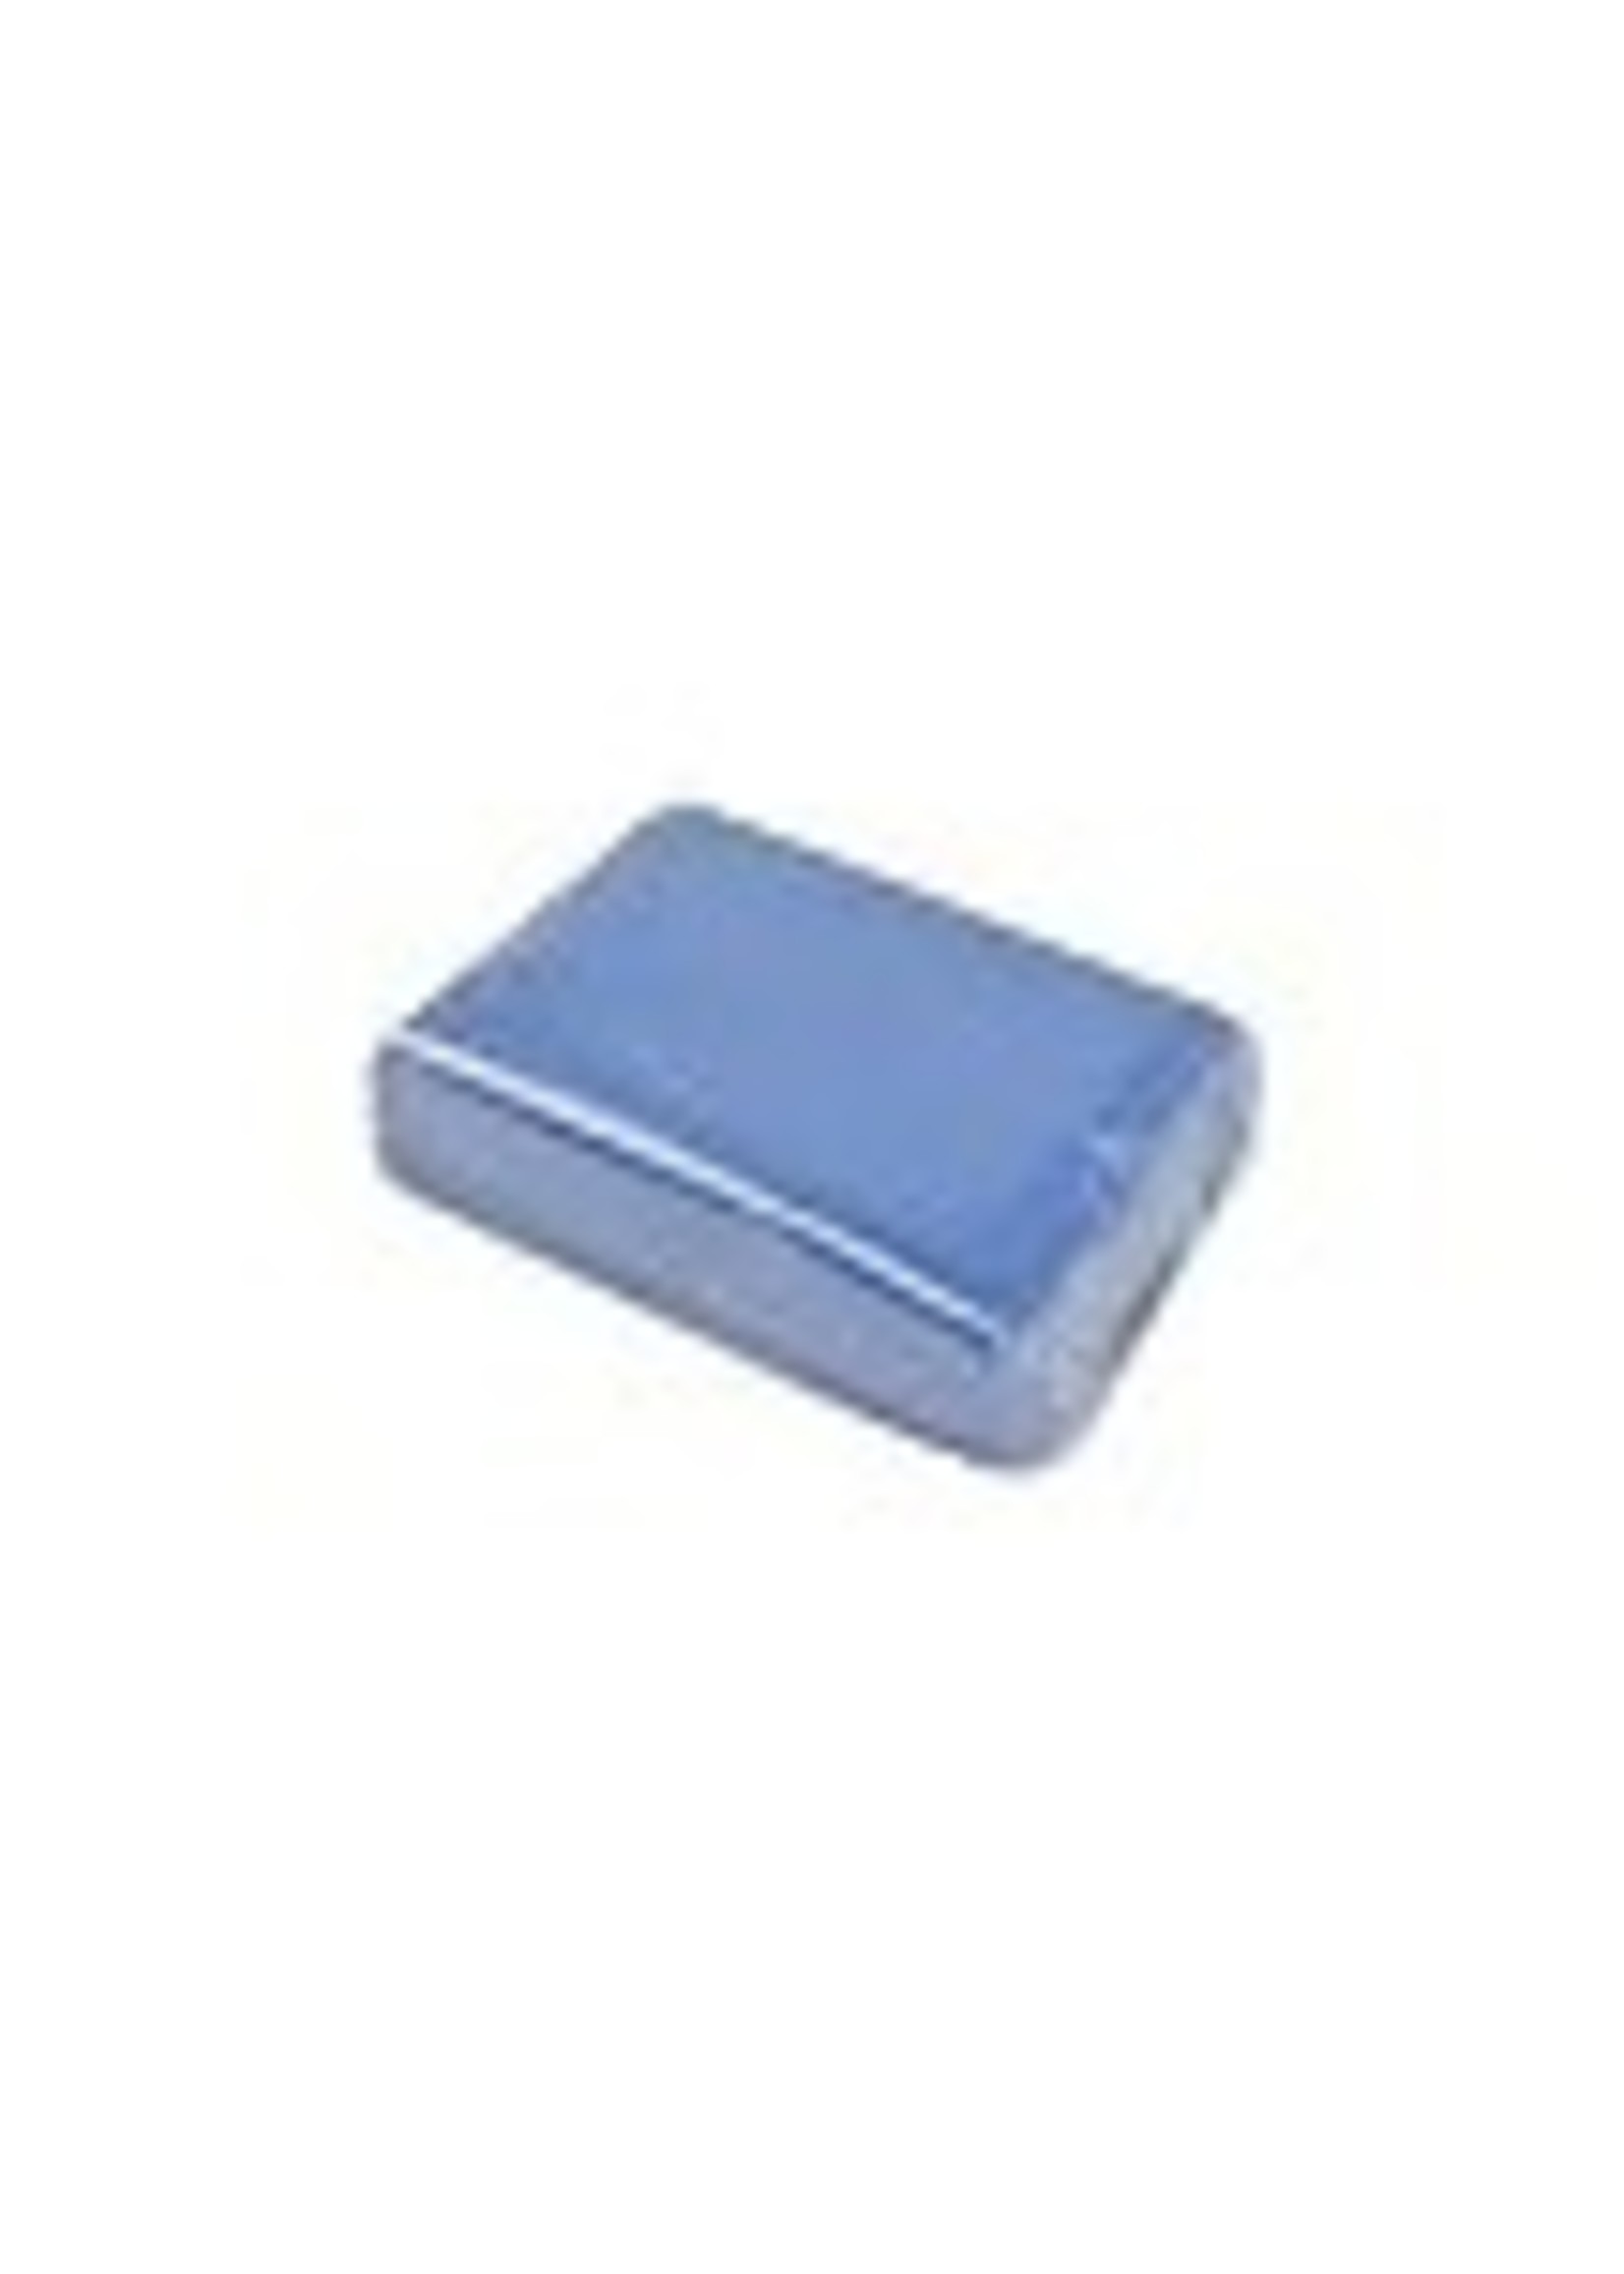 GST Blue Clay Bar (Medium Grade)